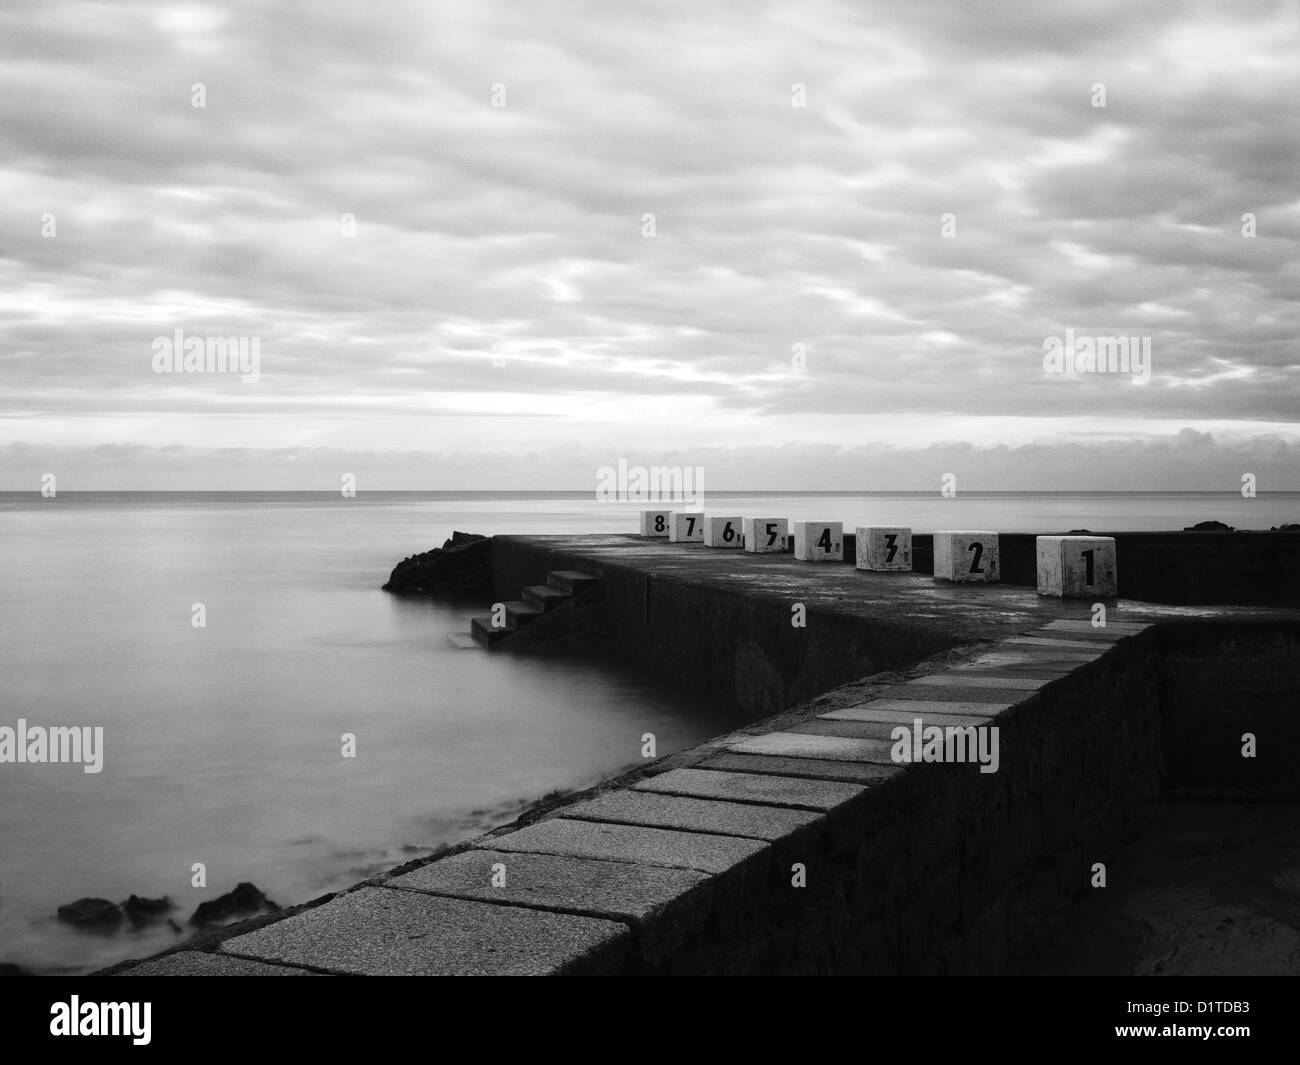 Piscine d'eau de mer, mer calme, Granville, Normandie, France, noir et blanc Banque D'Images